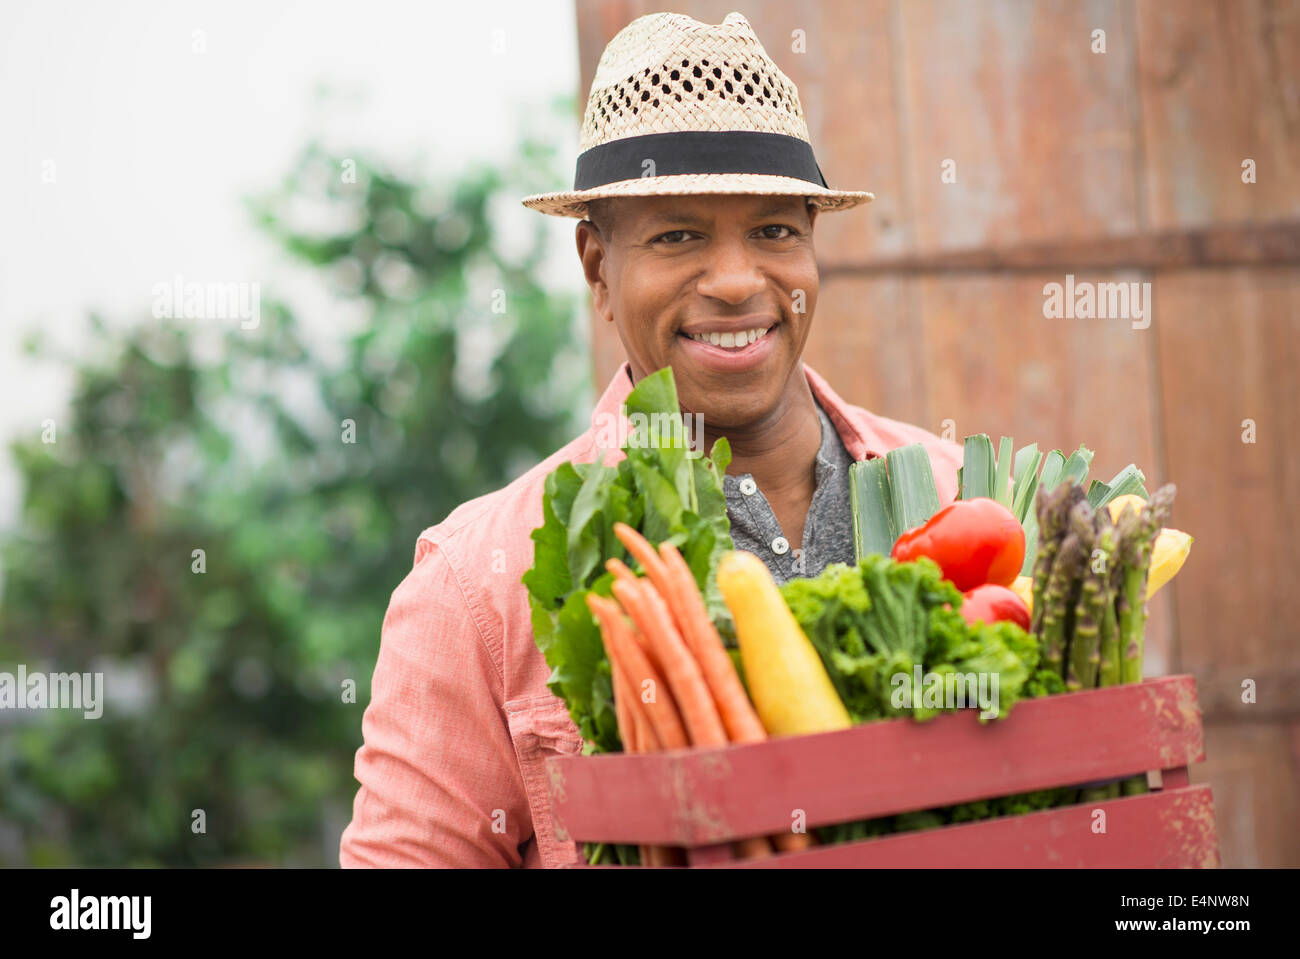 Ritratto di uomo che porta cassetta piena di verdure fresche Foto Stock